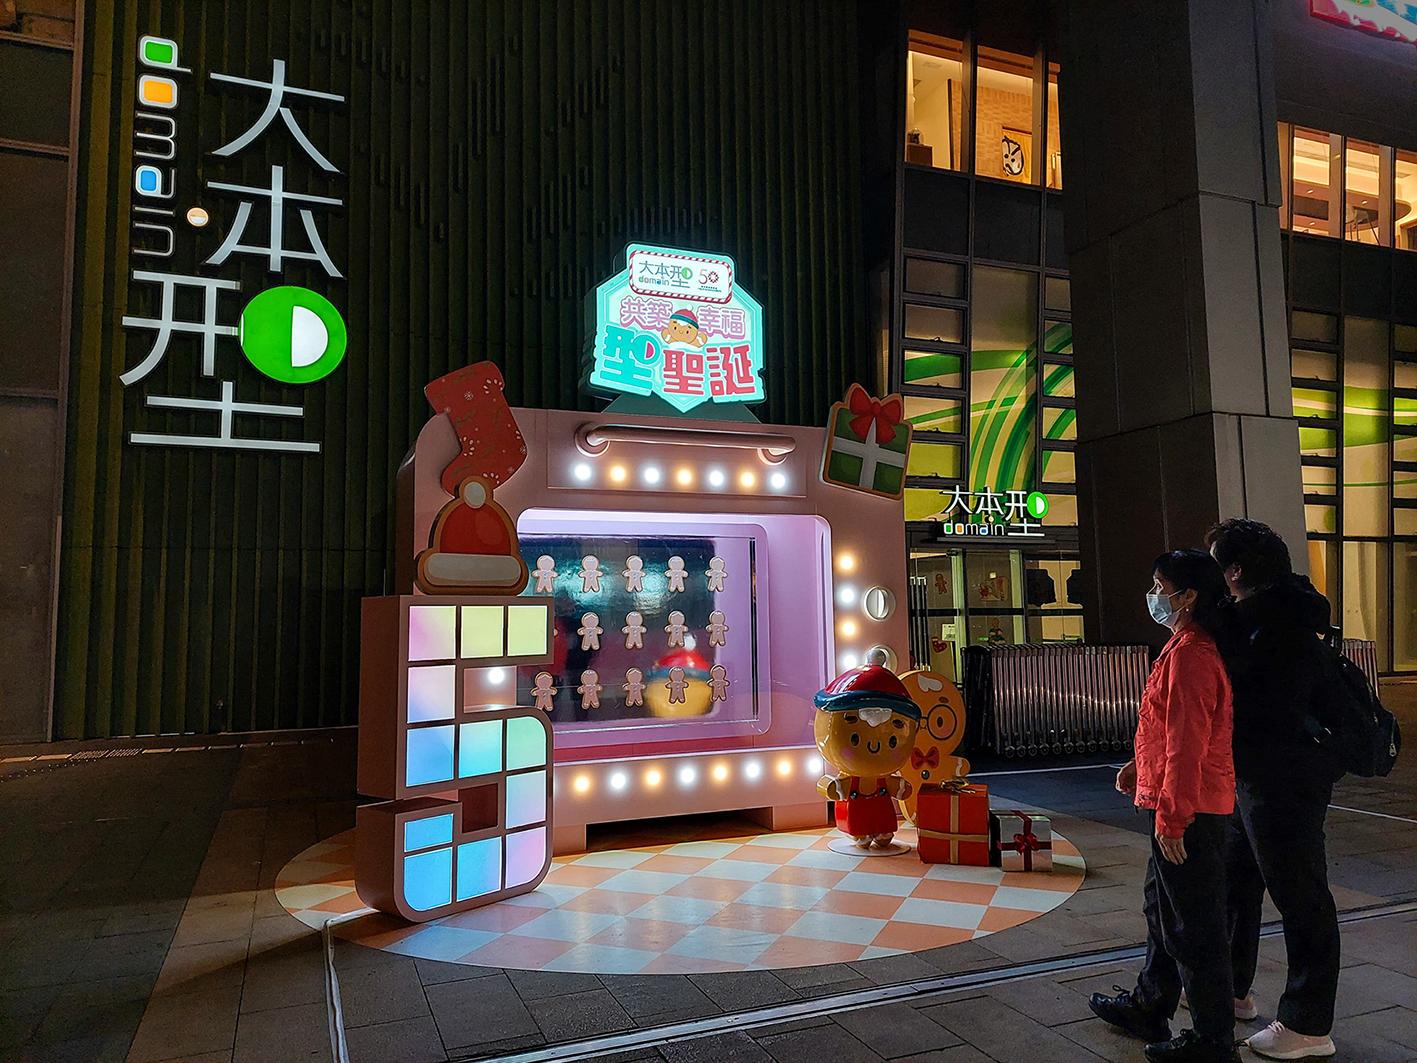 香港房屋委員會（房委會）於轄下多個商場舉辦聖誕節推廣及夜繽紛活動，與市民歡度聖誕。圖示房委會位於油塘的區域商場大本型於露天廣場以薑餅人家族為主題的聖誕裝飾。